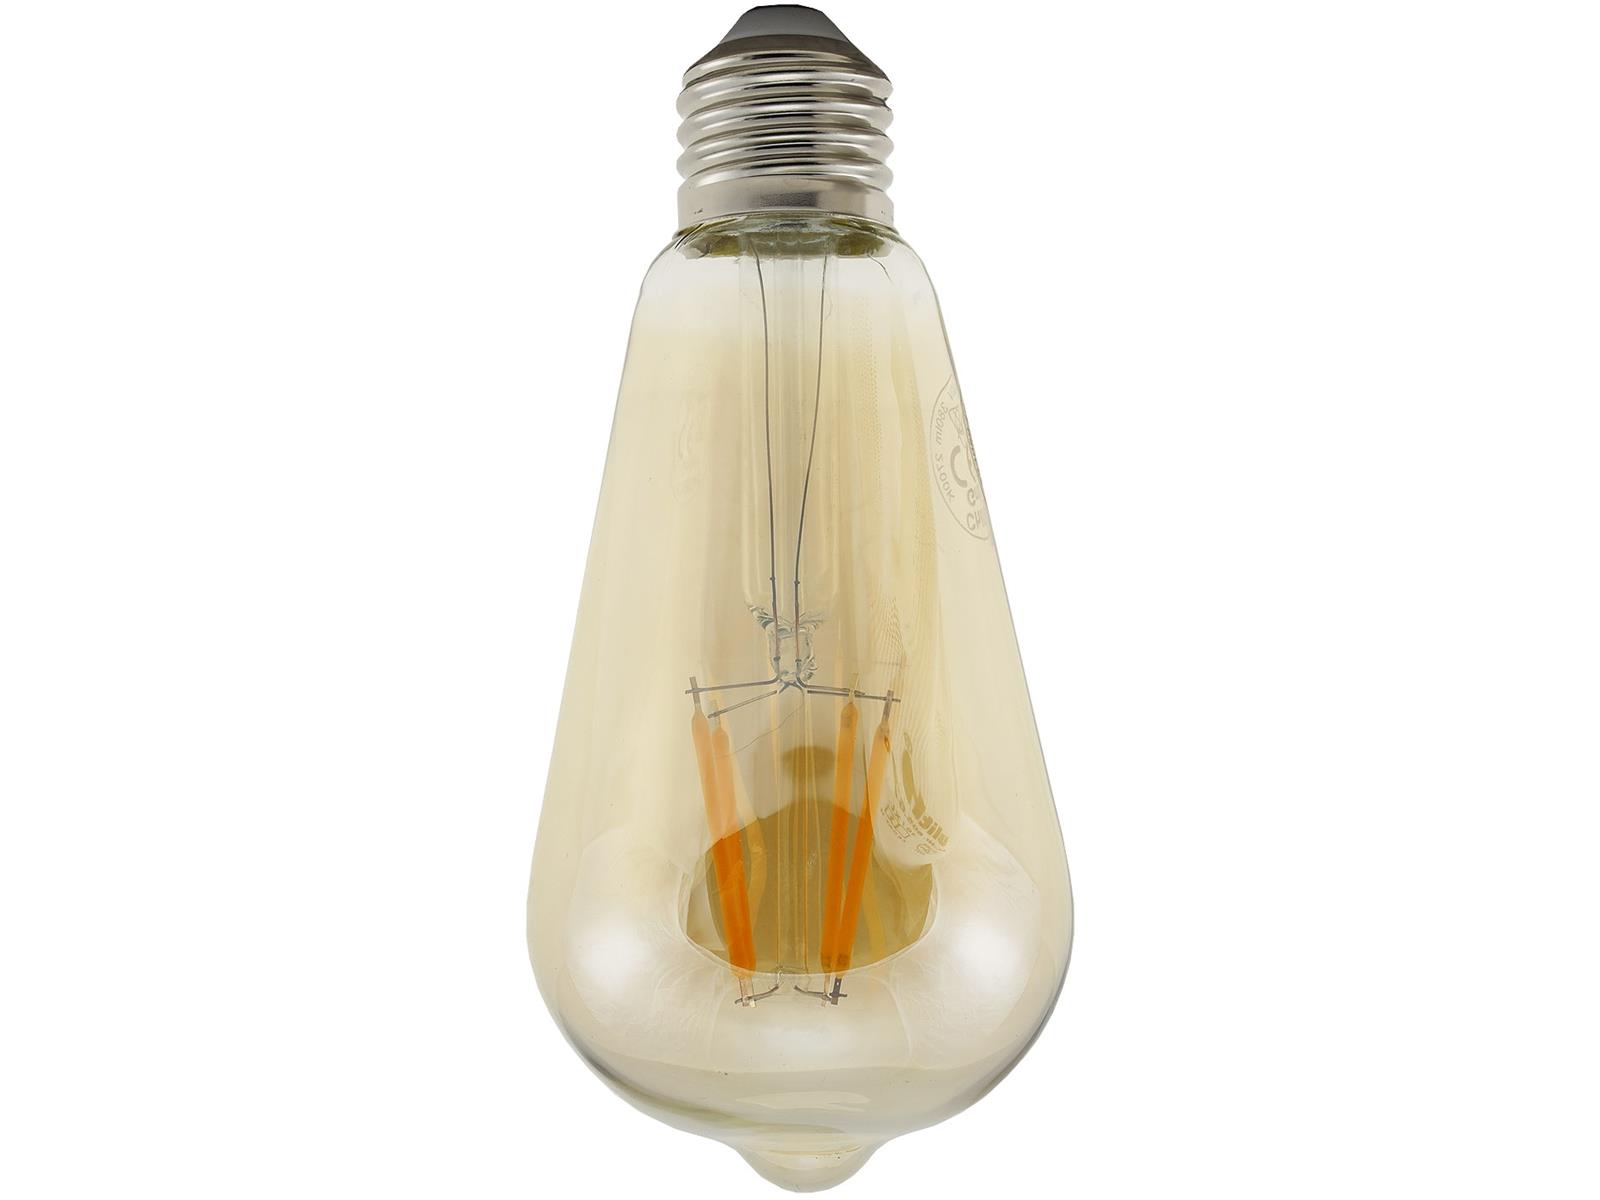 LED Glühlampe E27 "Vintage ST64" 2700k, 380lm, 230V/4W, warmweiß/amber